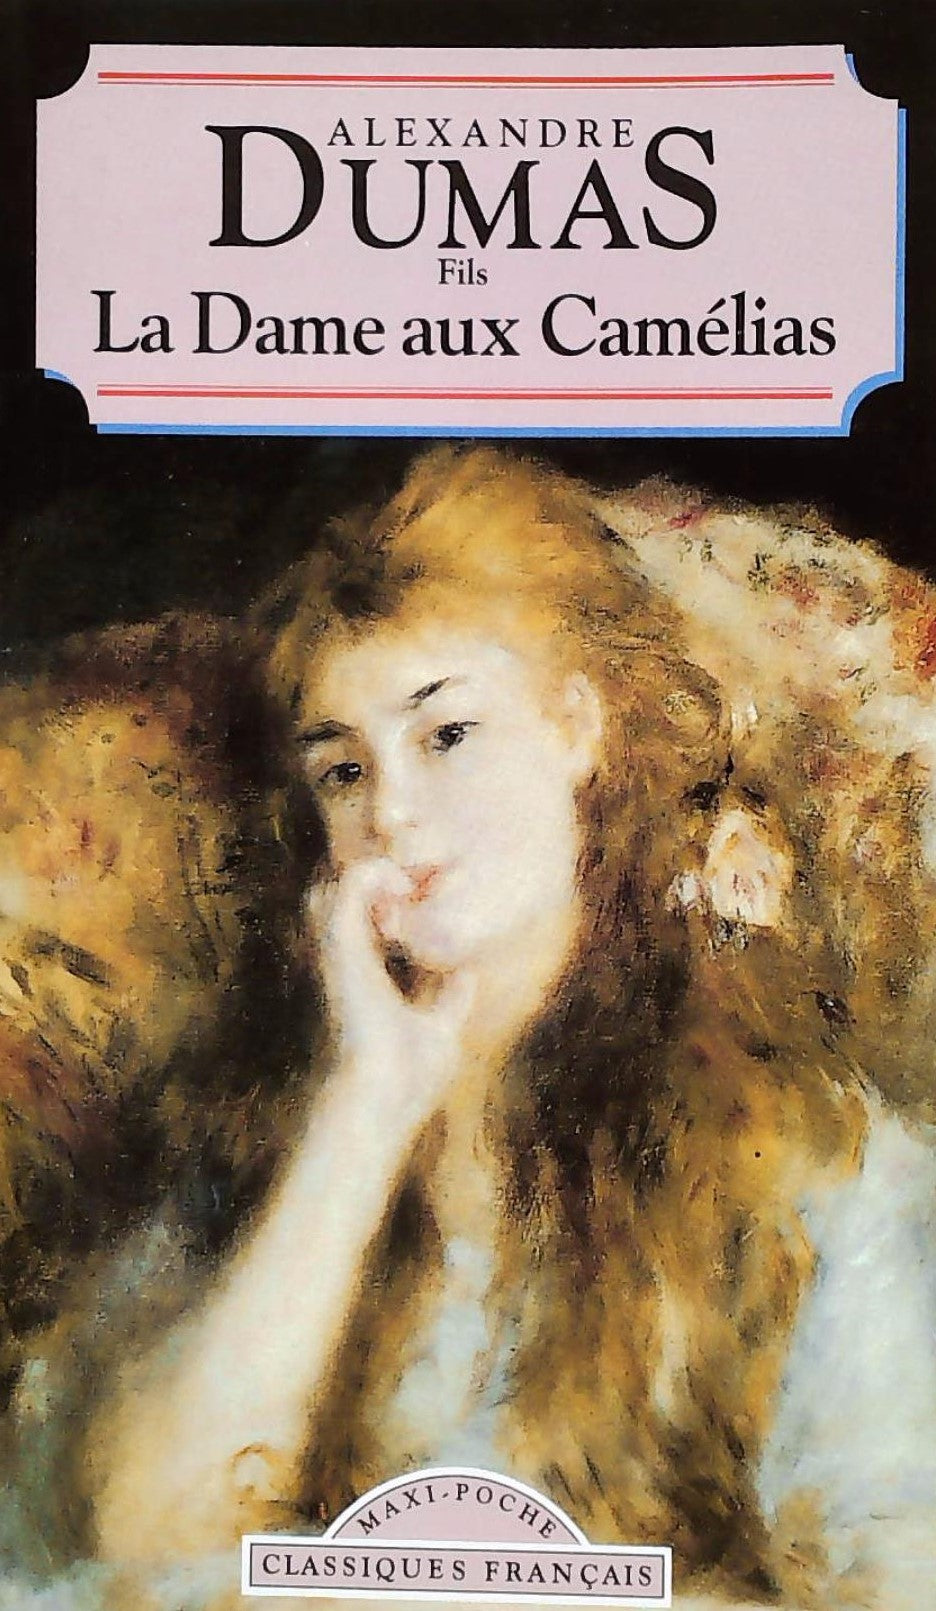 Livre ISBN 2877142051 Classiques Français : La dame aux camélias (Alexandre Dumas)